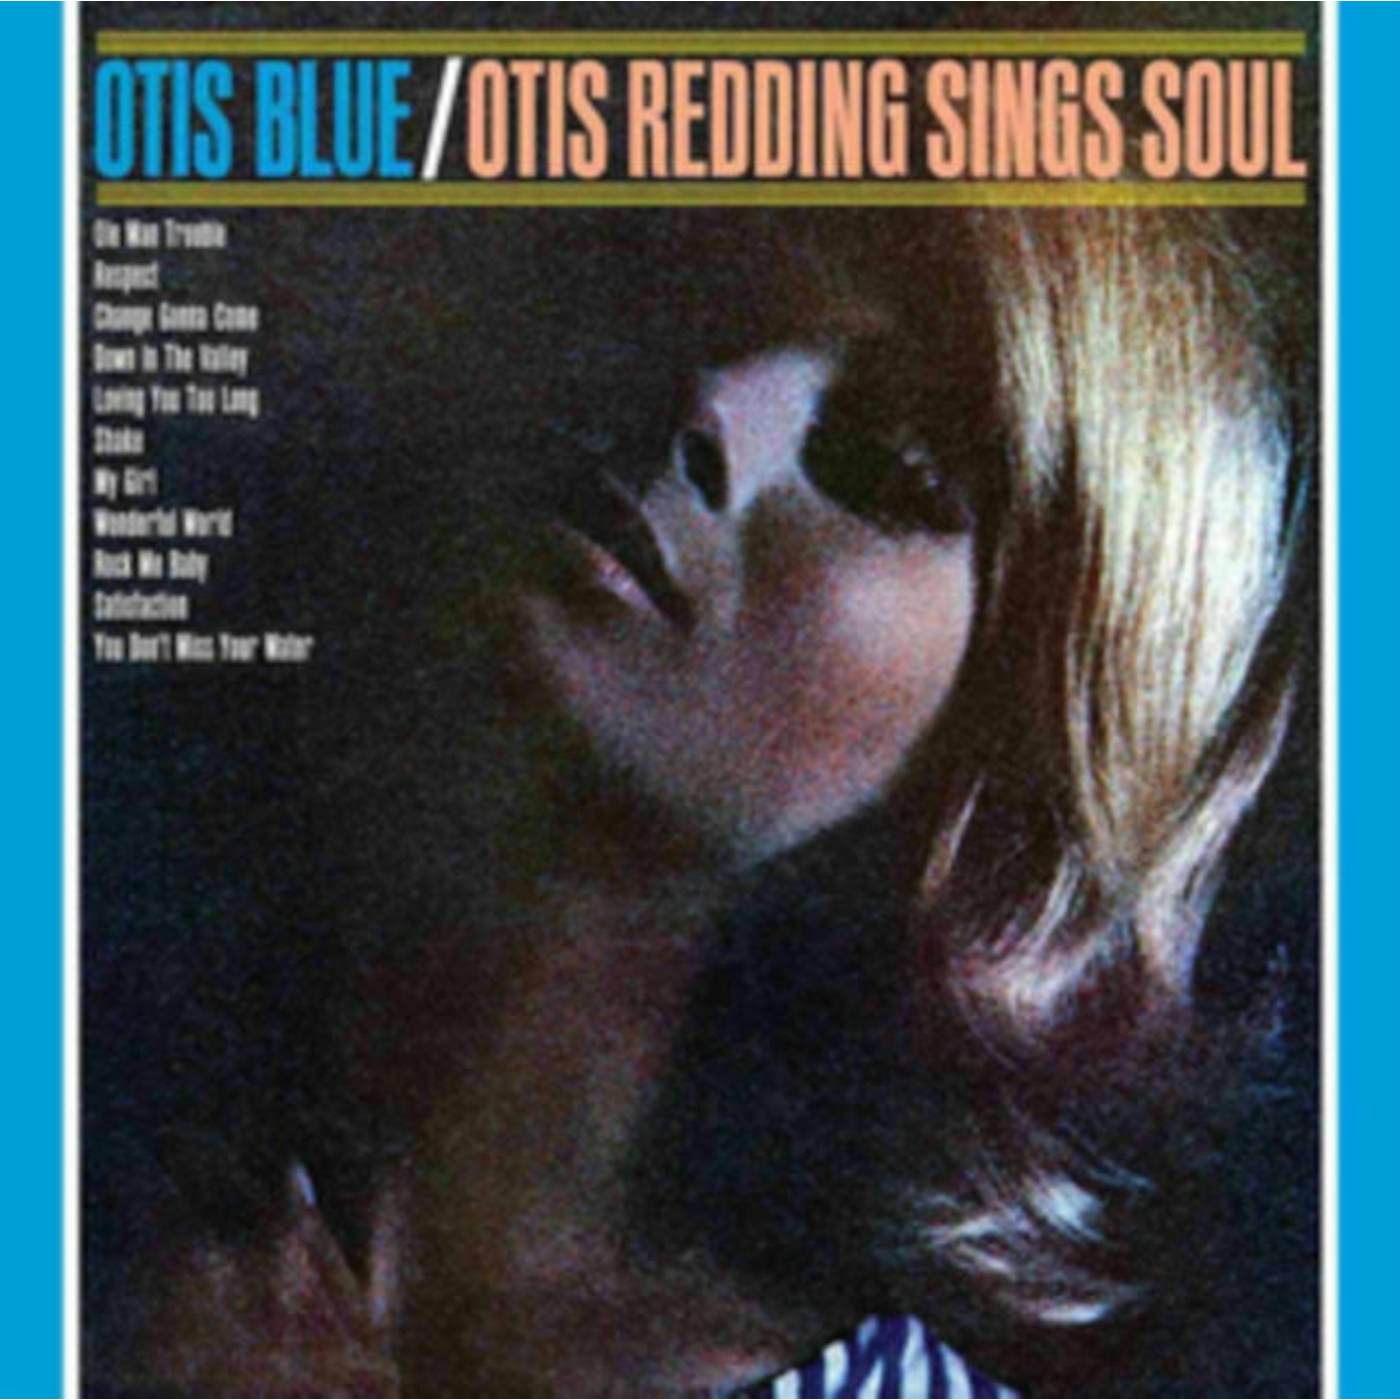 Otis Redding LP - Otis Blue / Otis Redding Sings Soul (Vinyl)